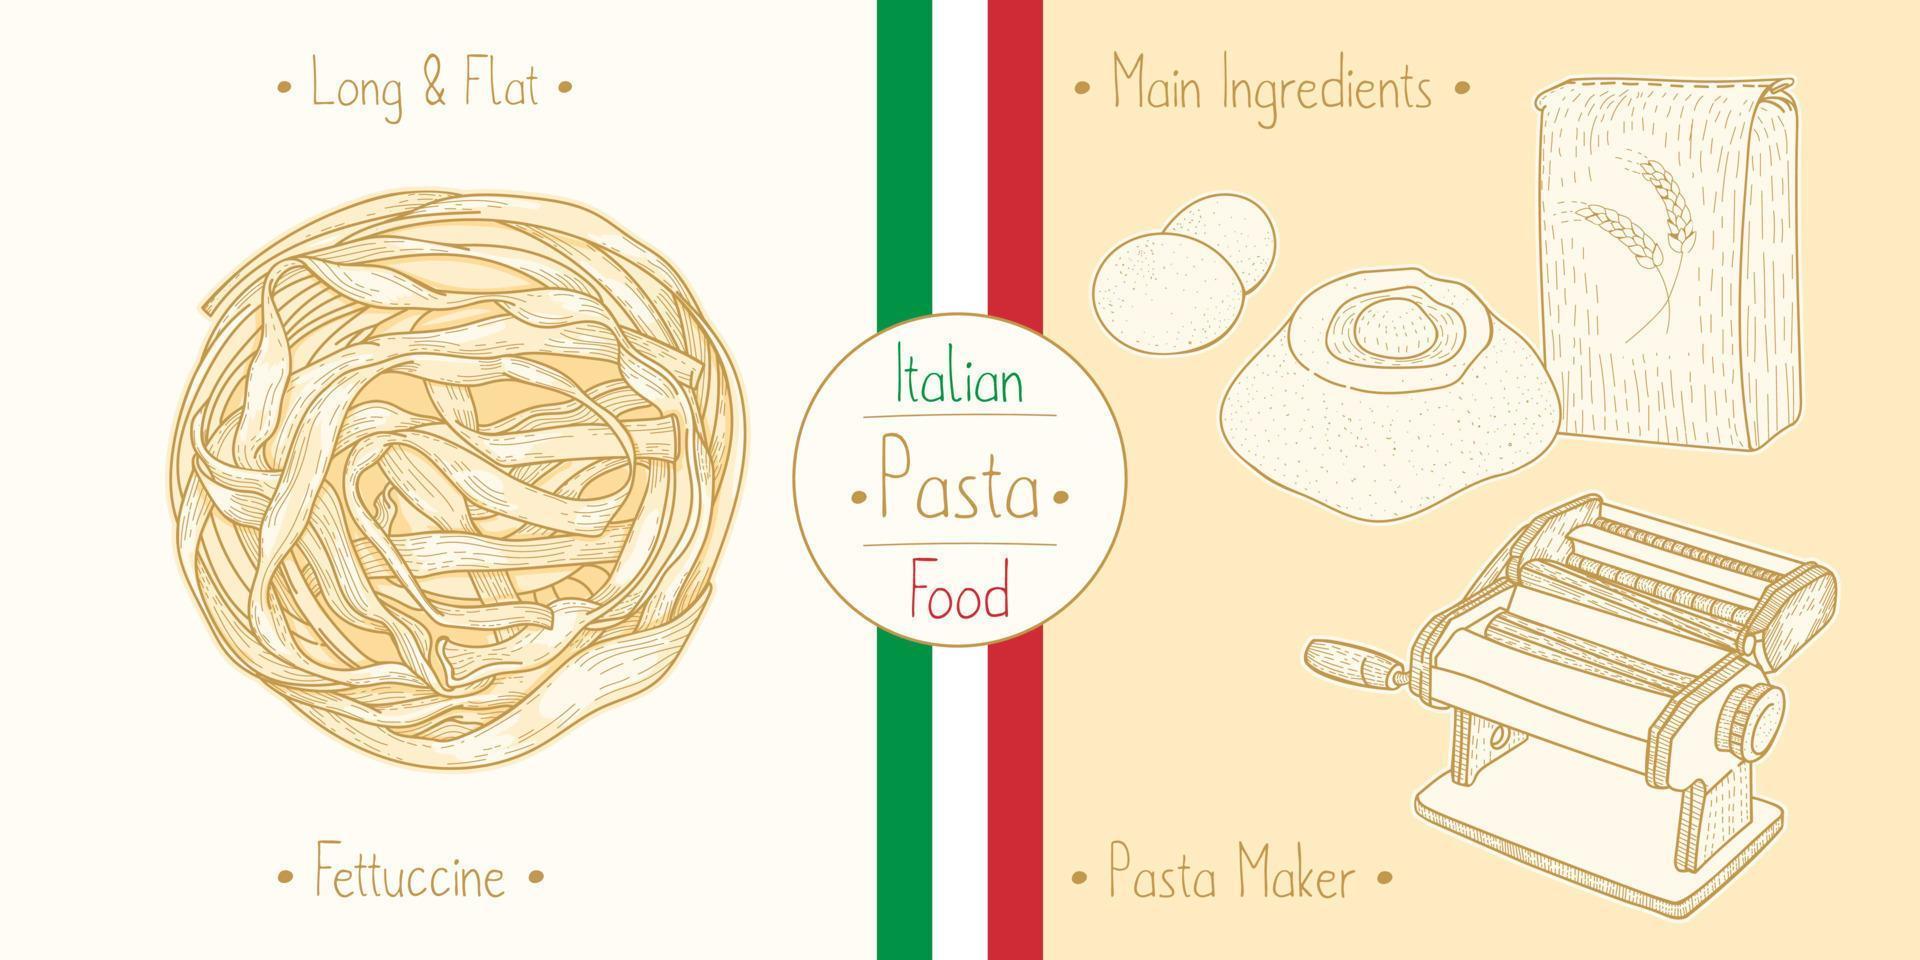 cozinhar massas de fettuccine de comida italiana e principais ingredientes e equipamentos de fabricantes de massas, esboçar ilustração em estilo vintage vetor